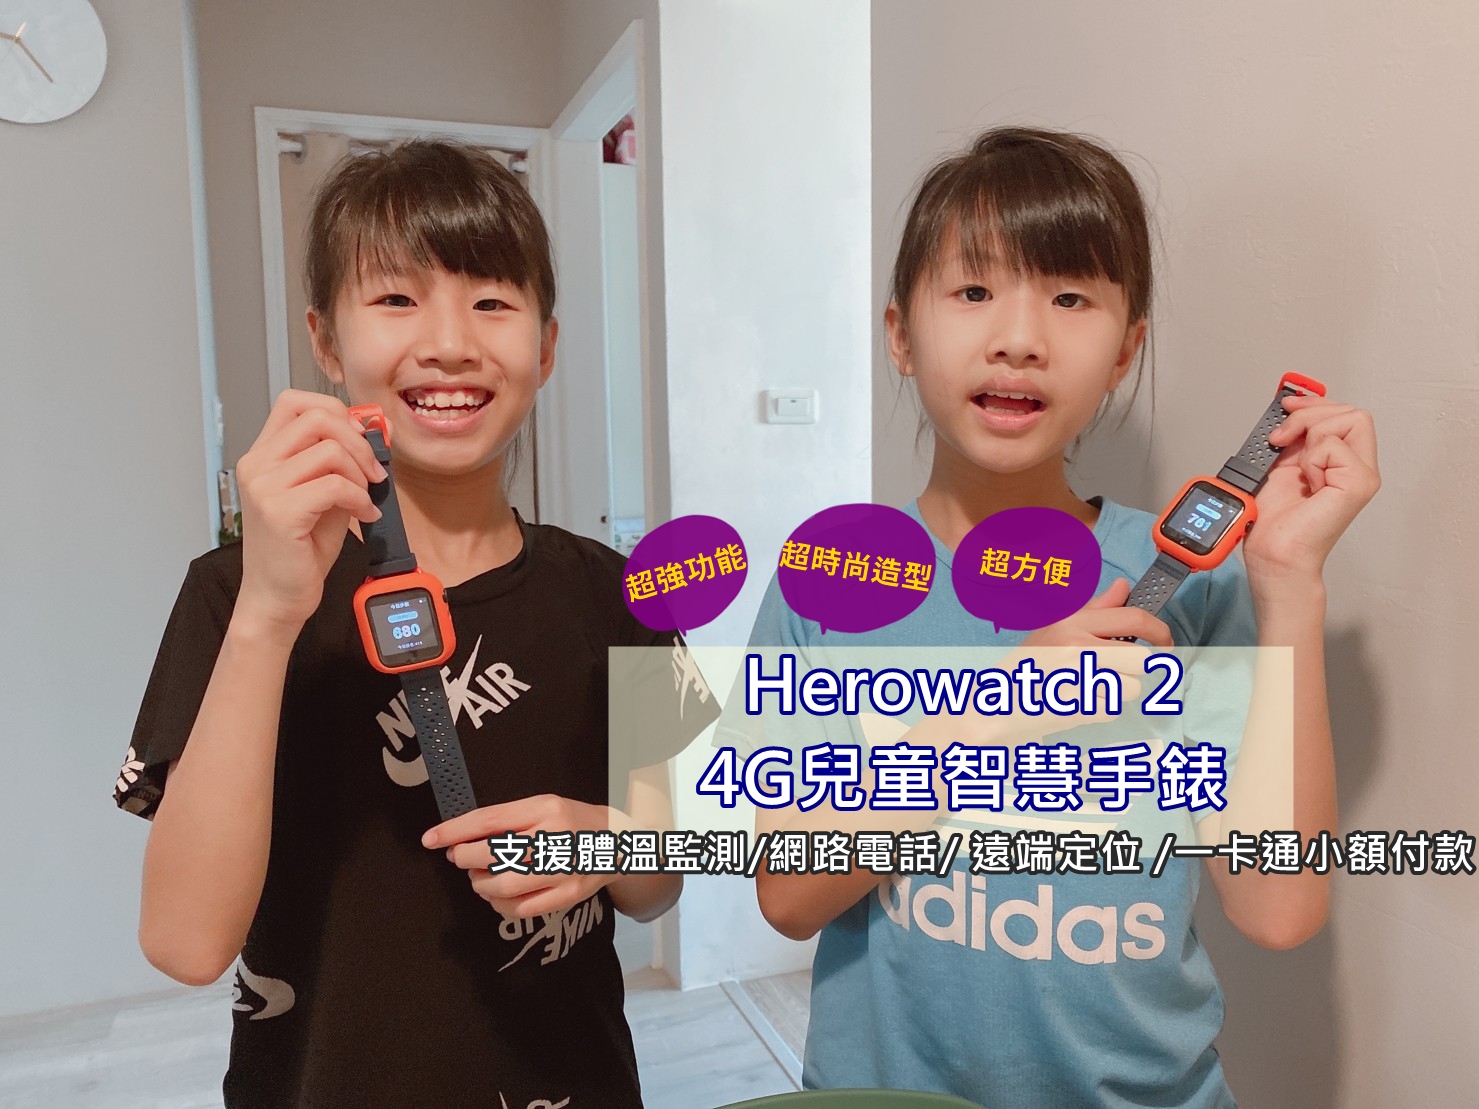 Herowatch 2 4G兒童智慧手錶 拜託家長都給孩子用一支! 支援體溫監測/網路電話/ 遠端定位 /一卡通小額付款